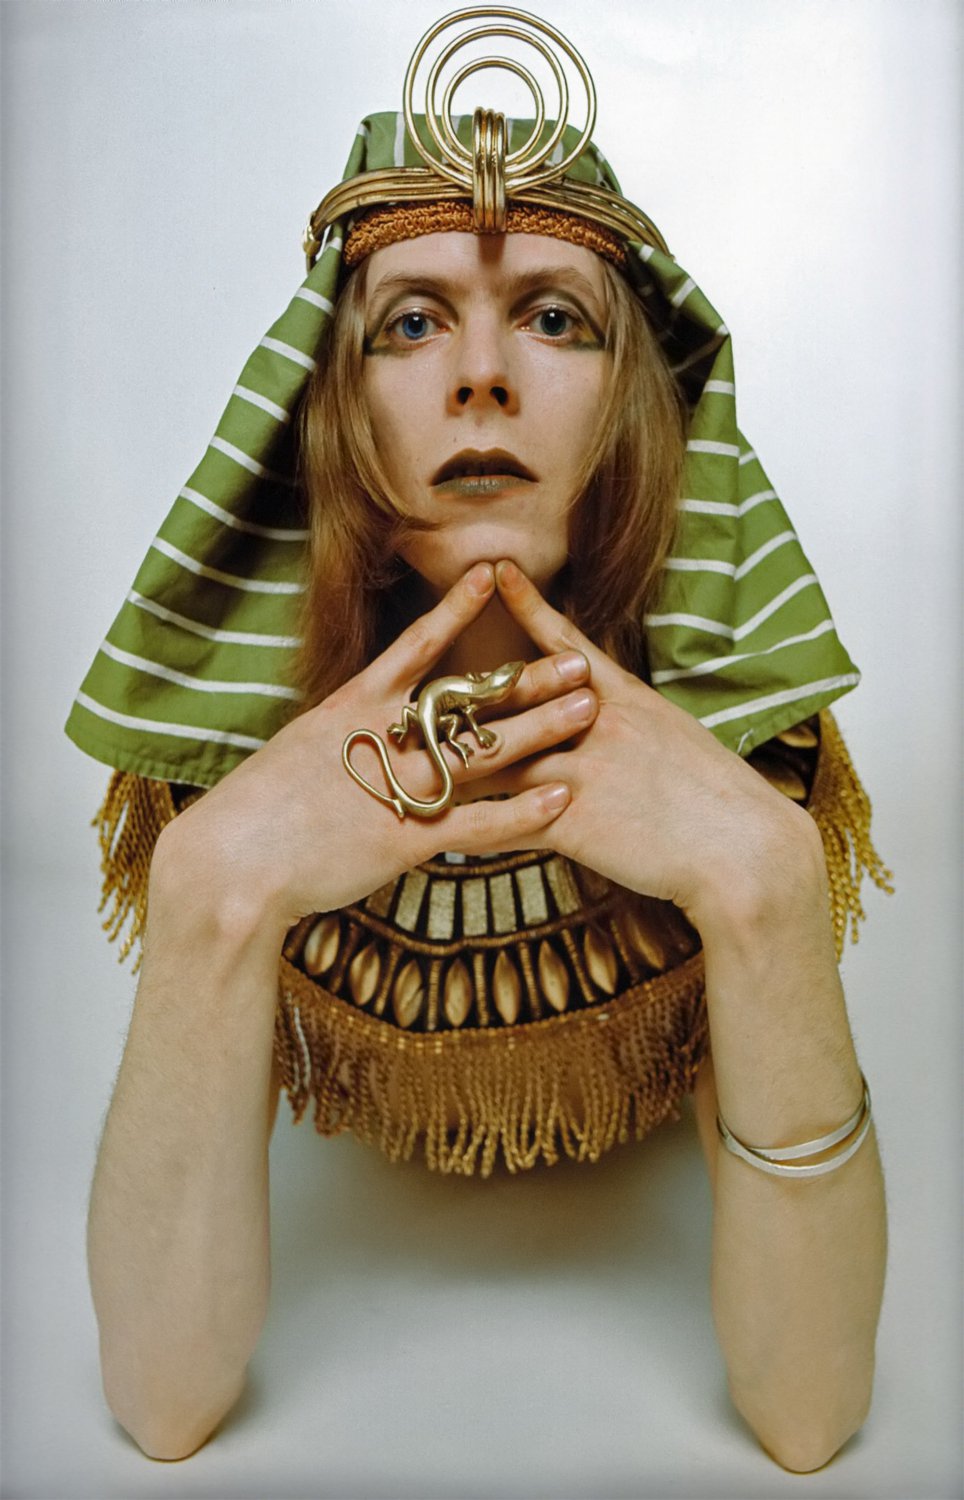 David Bowie 18"x28" (45cm/70cm) Poster